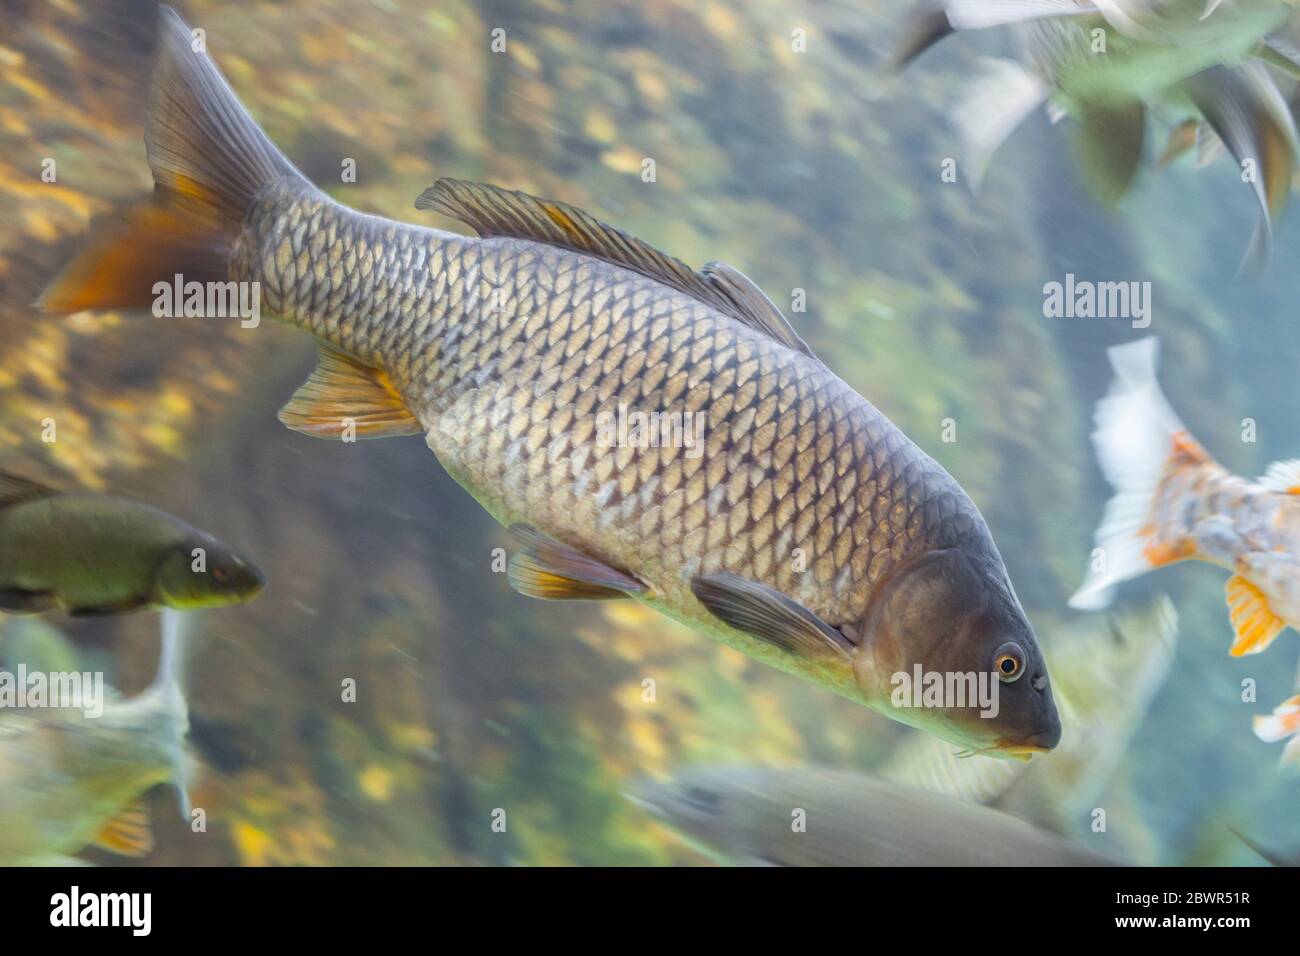 Carpa europea o Cyprinus carpio, una specie di pesci di acqua dolce, abbondanti nel fiume Guadiana, Spagna. Foto Stock